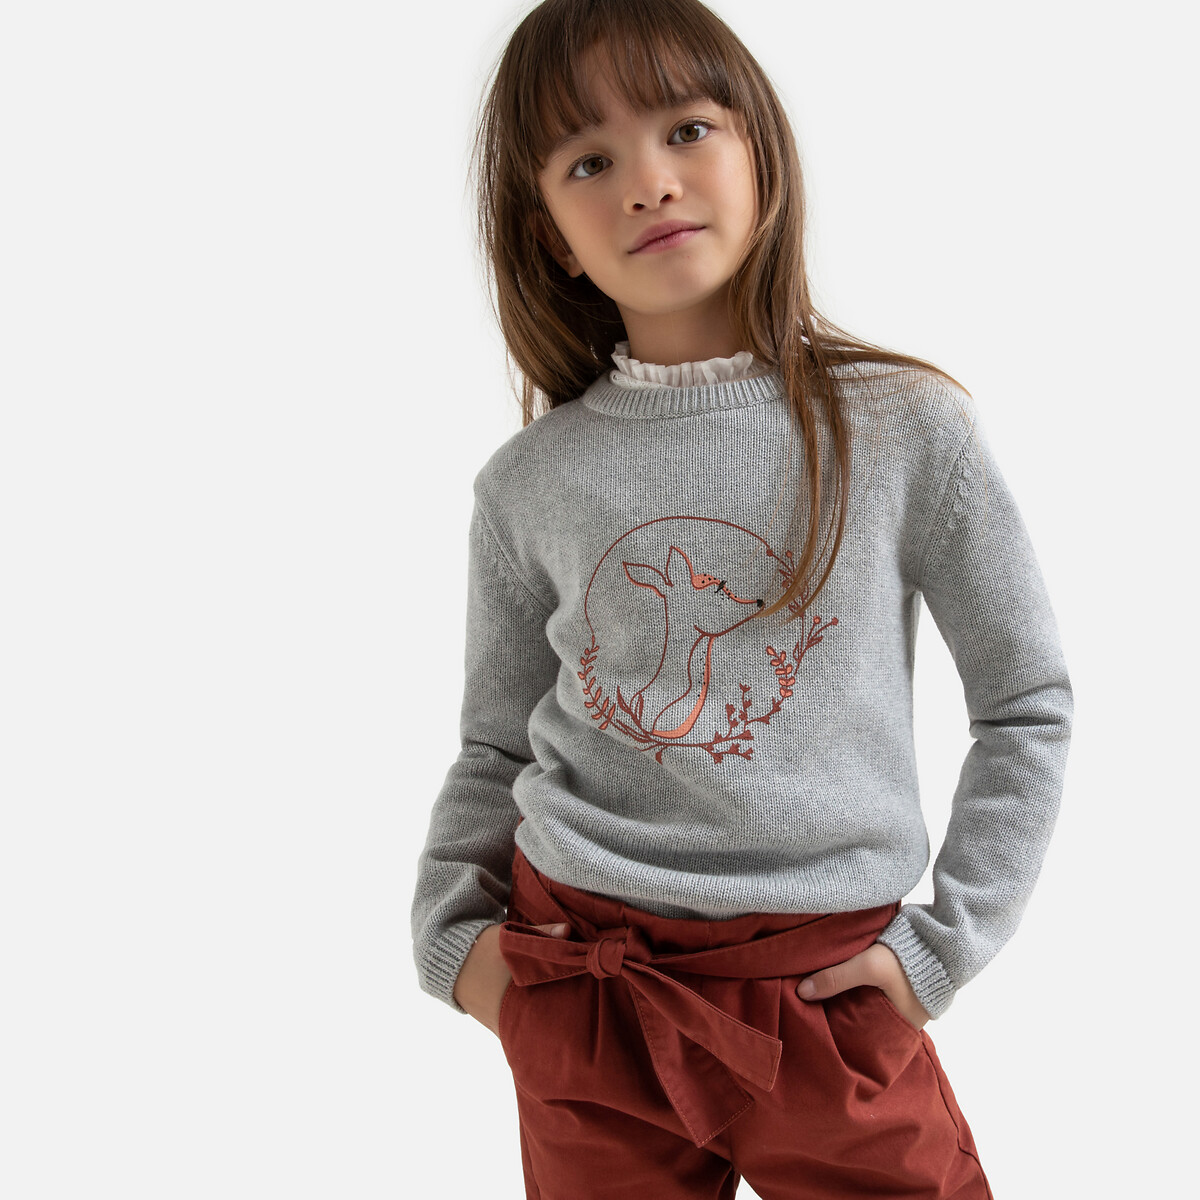 Пуловер LaRedoute С круглым вырезом из тонкого трикотажа с принтом 3-12 лет 4 года - 102 см серый, размер 4 года - 102 см